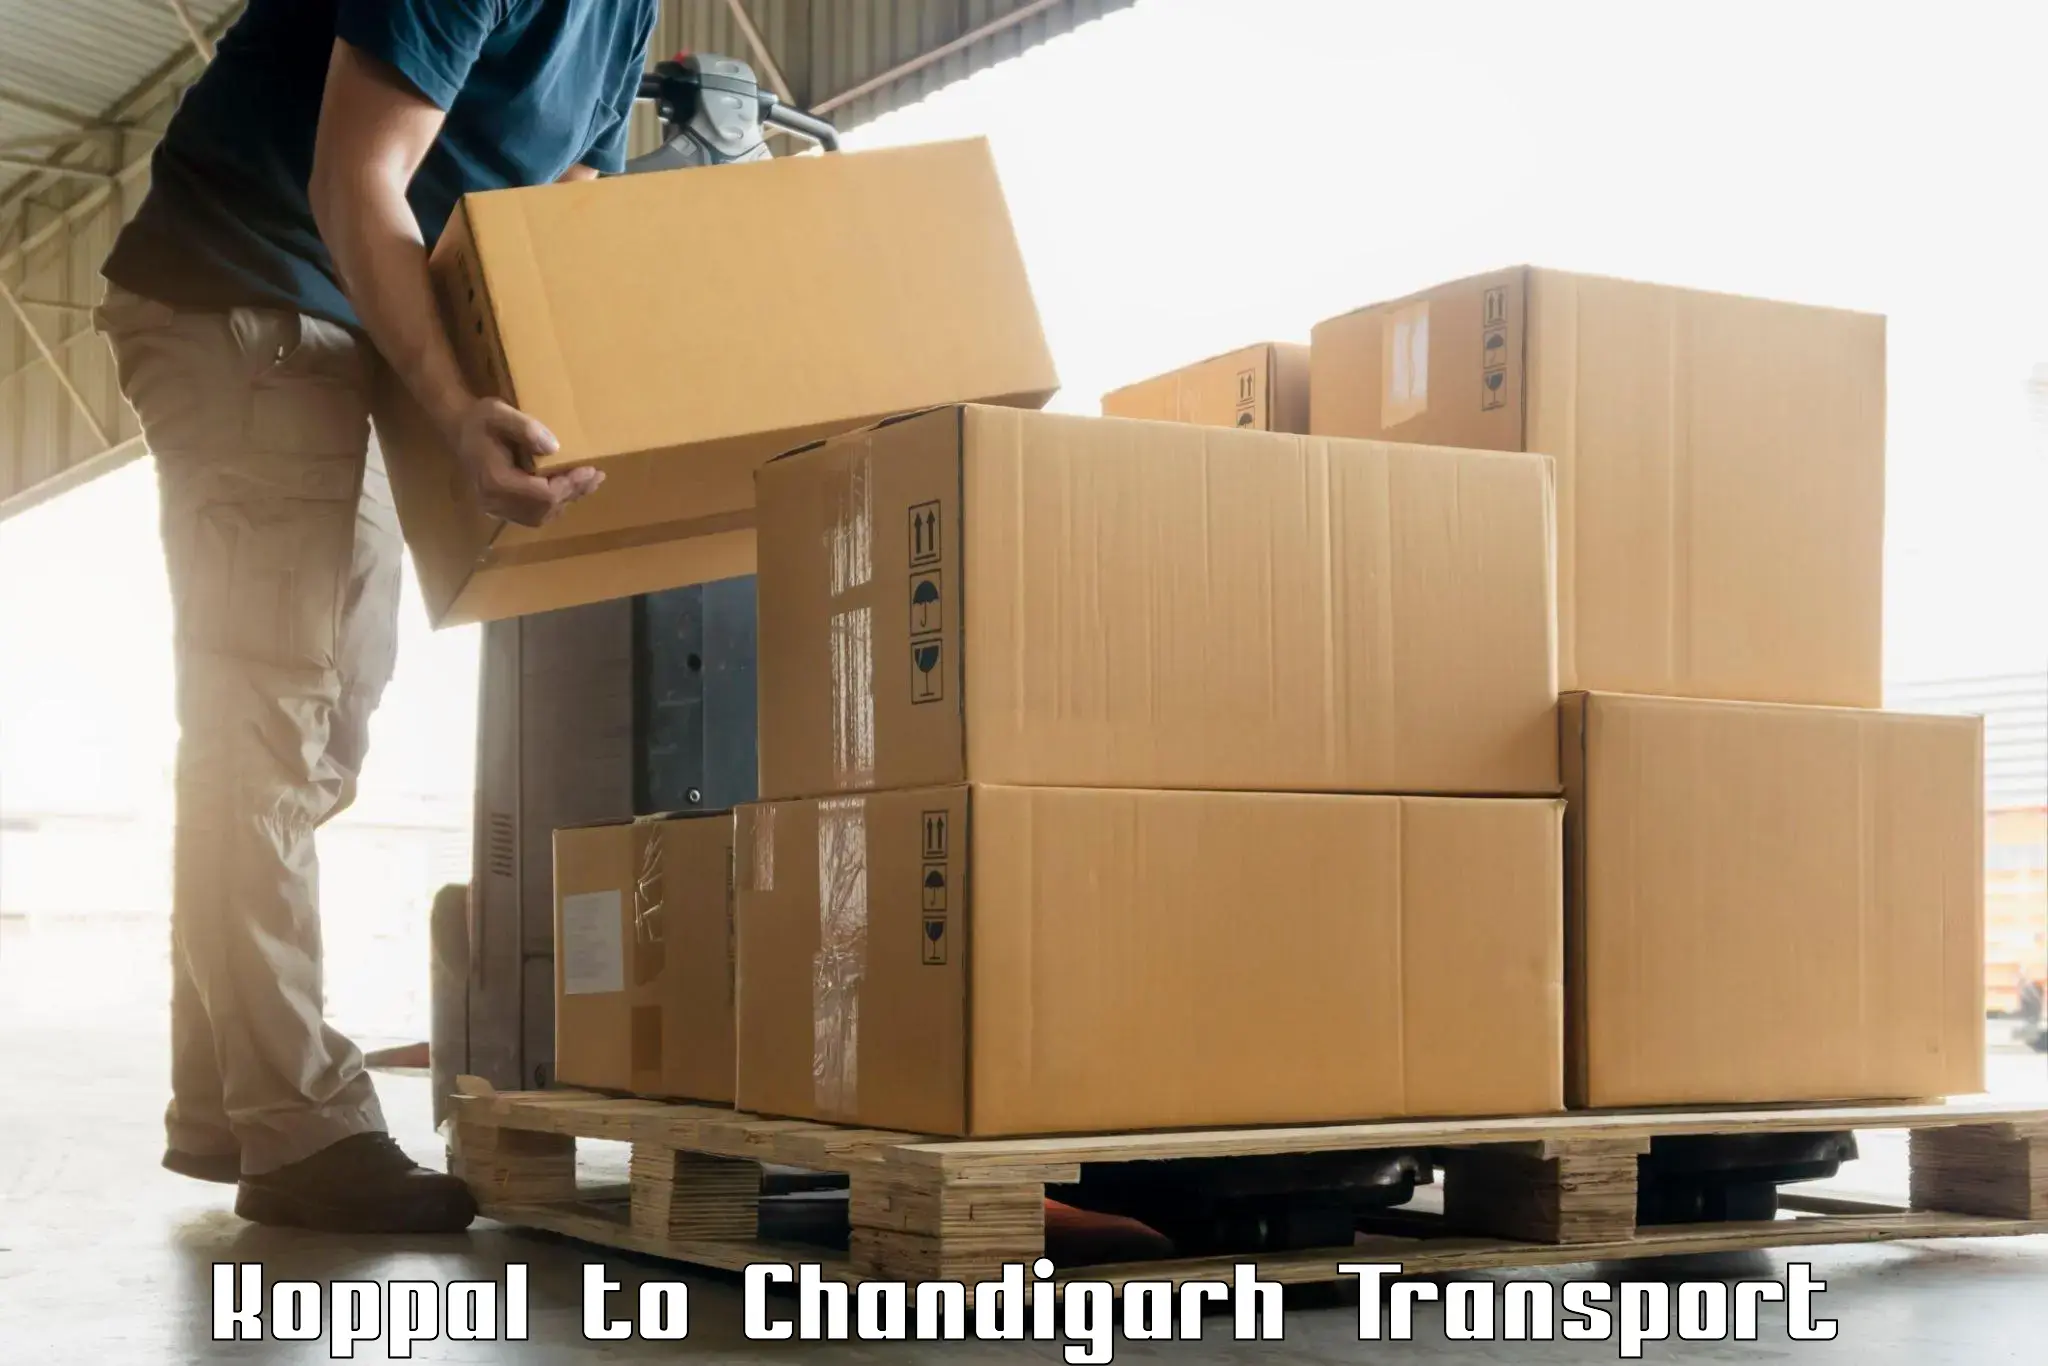 Interstate goods transport Koppal to Chandigarh